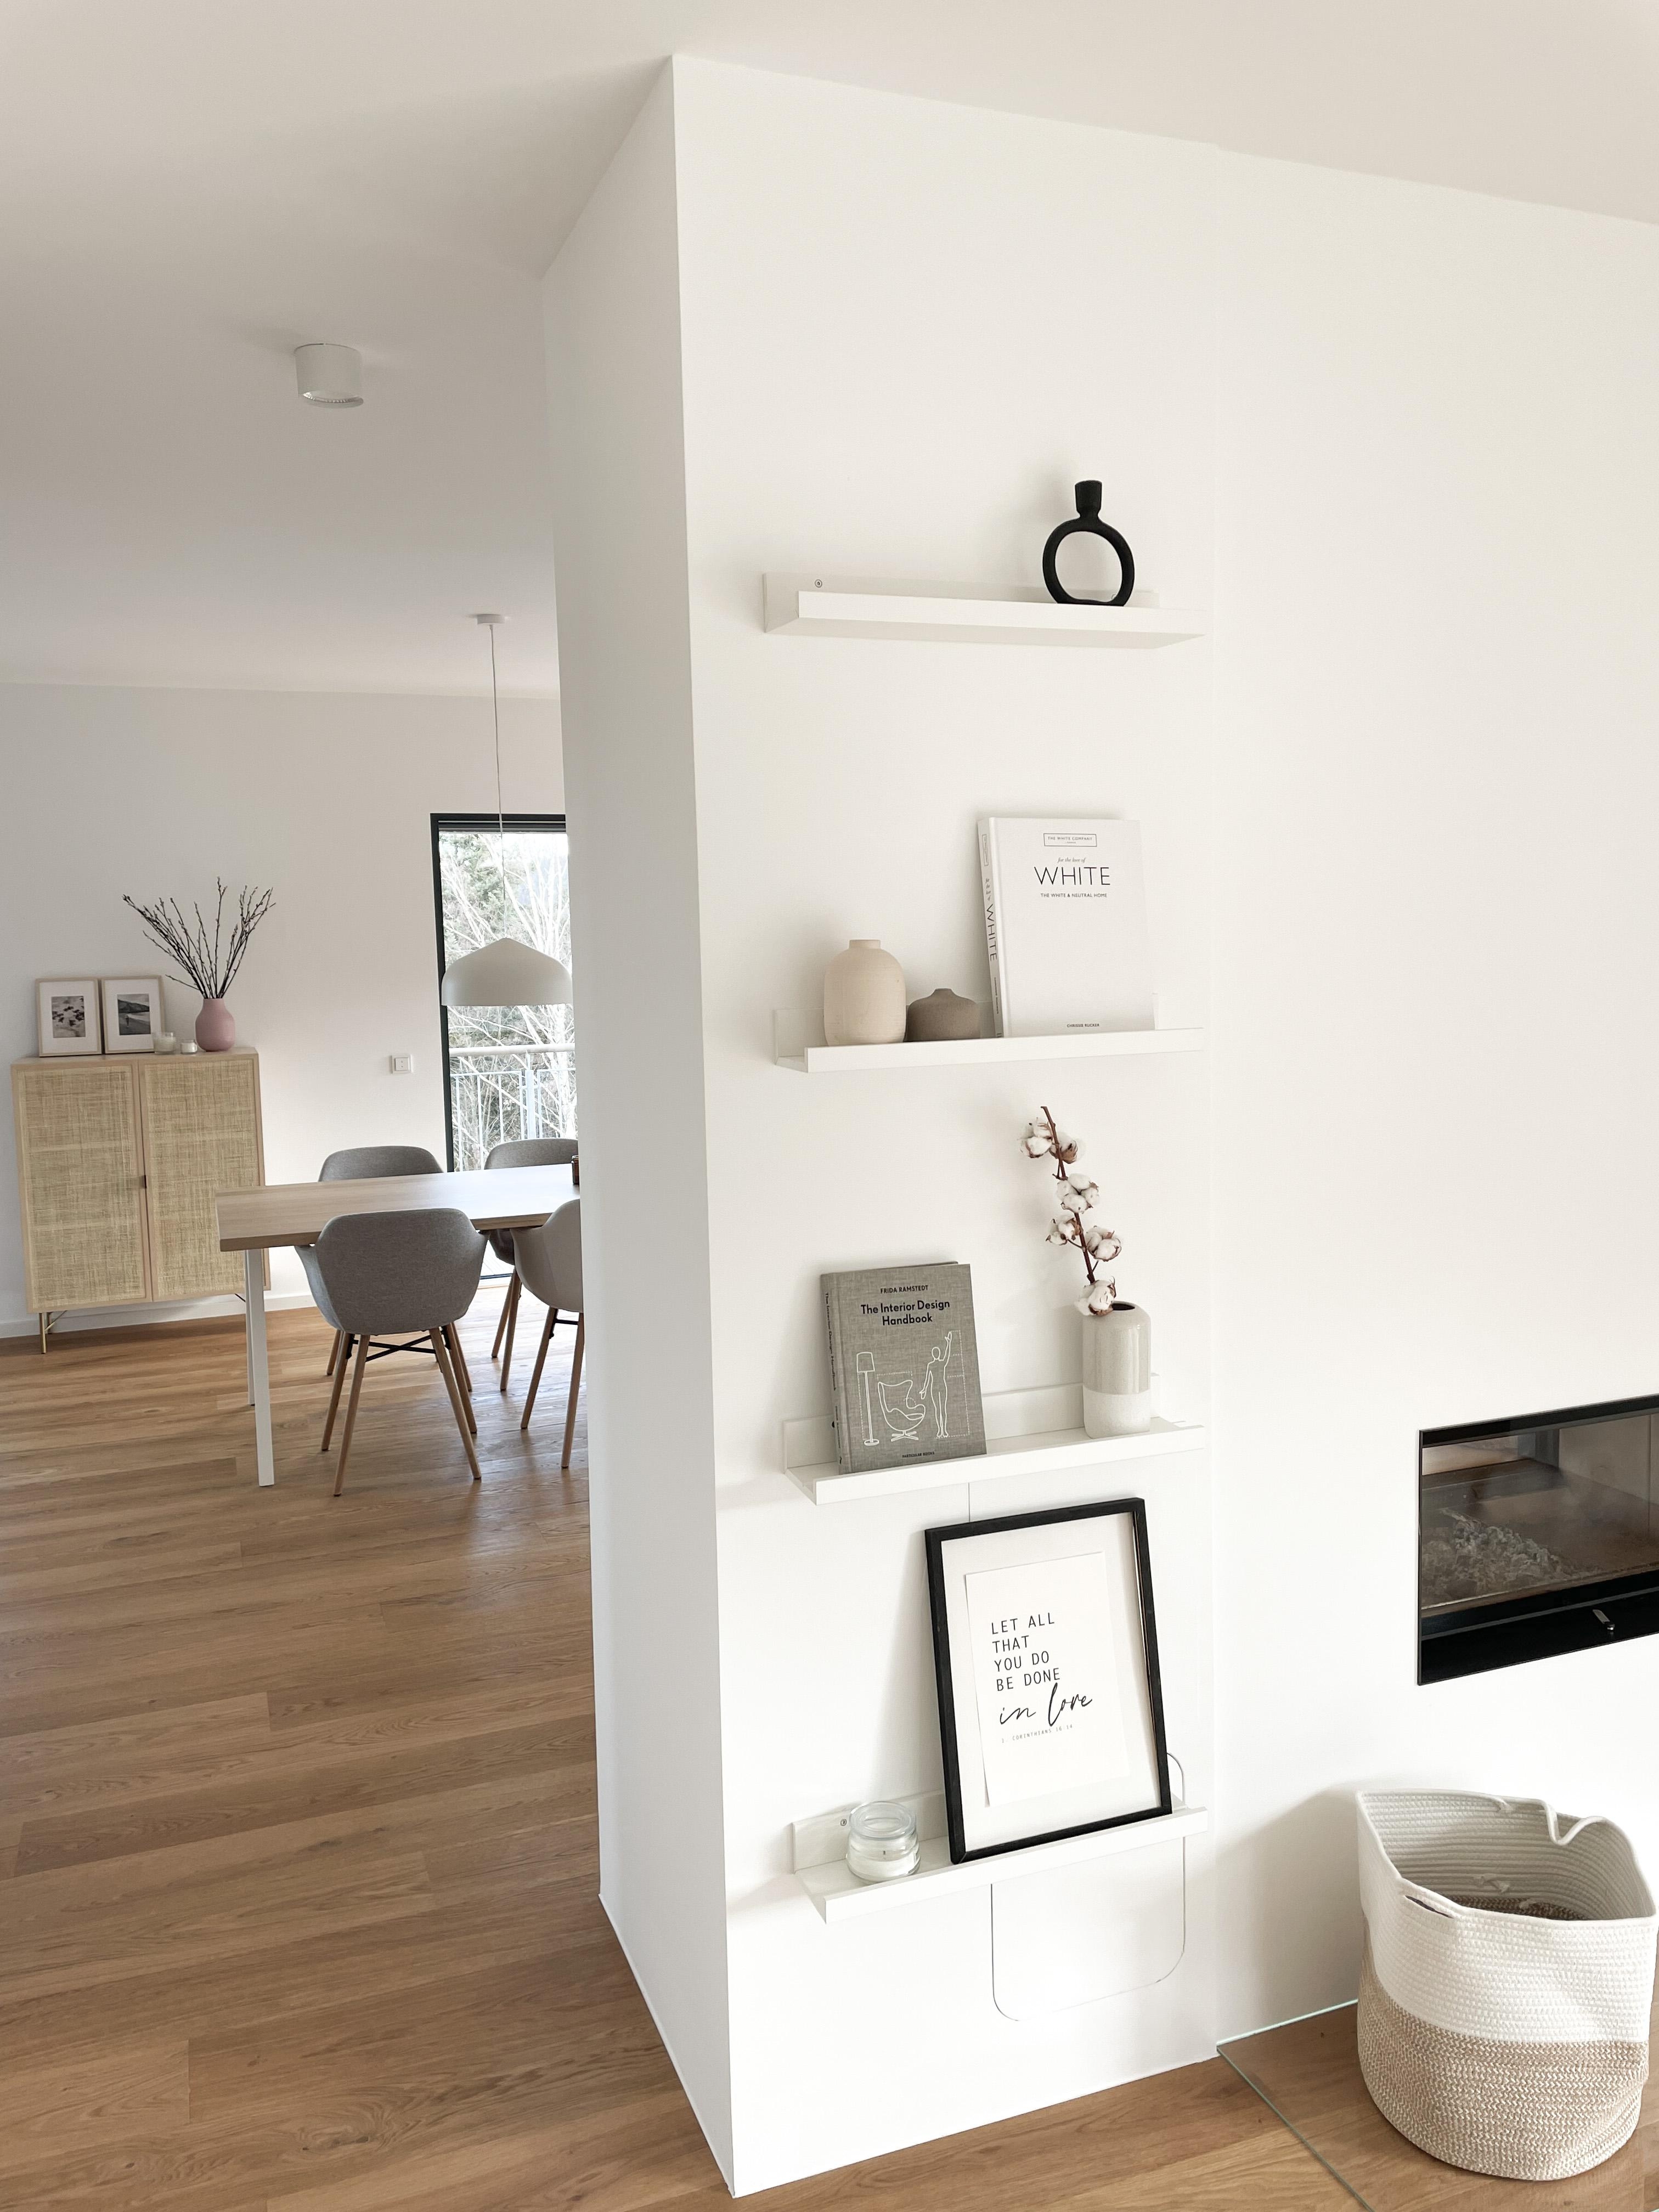 Ein kleiner Blick in unser Wohn- & Esszimmer 🌿
#skandinavianhome #bilderleiste #bilderwand #homedecoration 